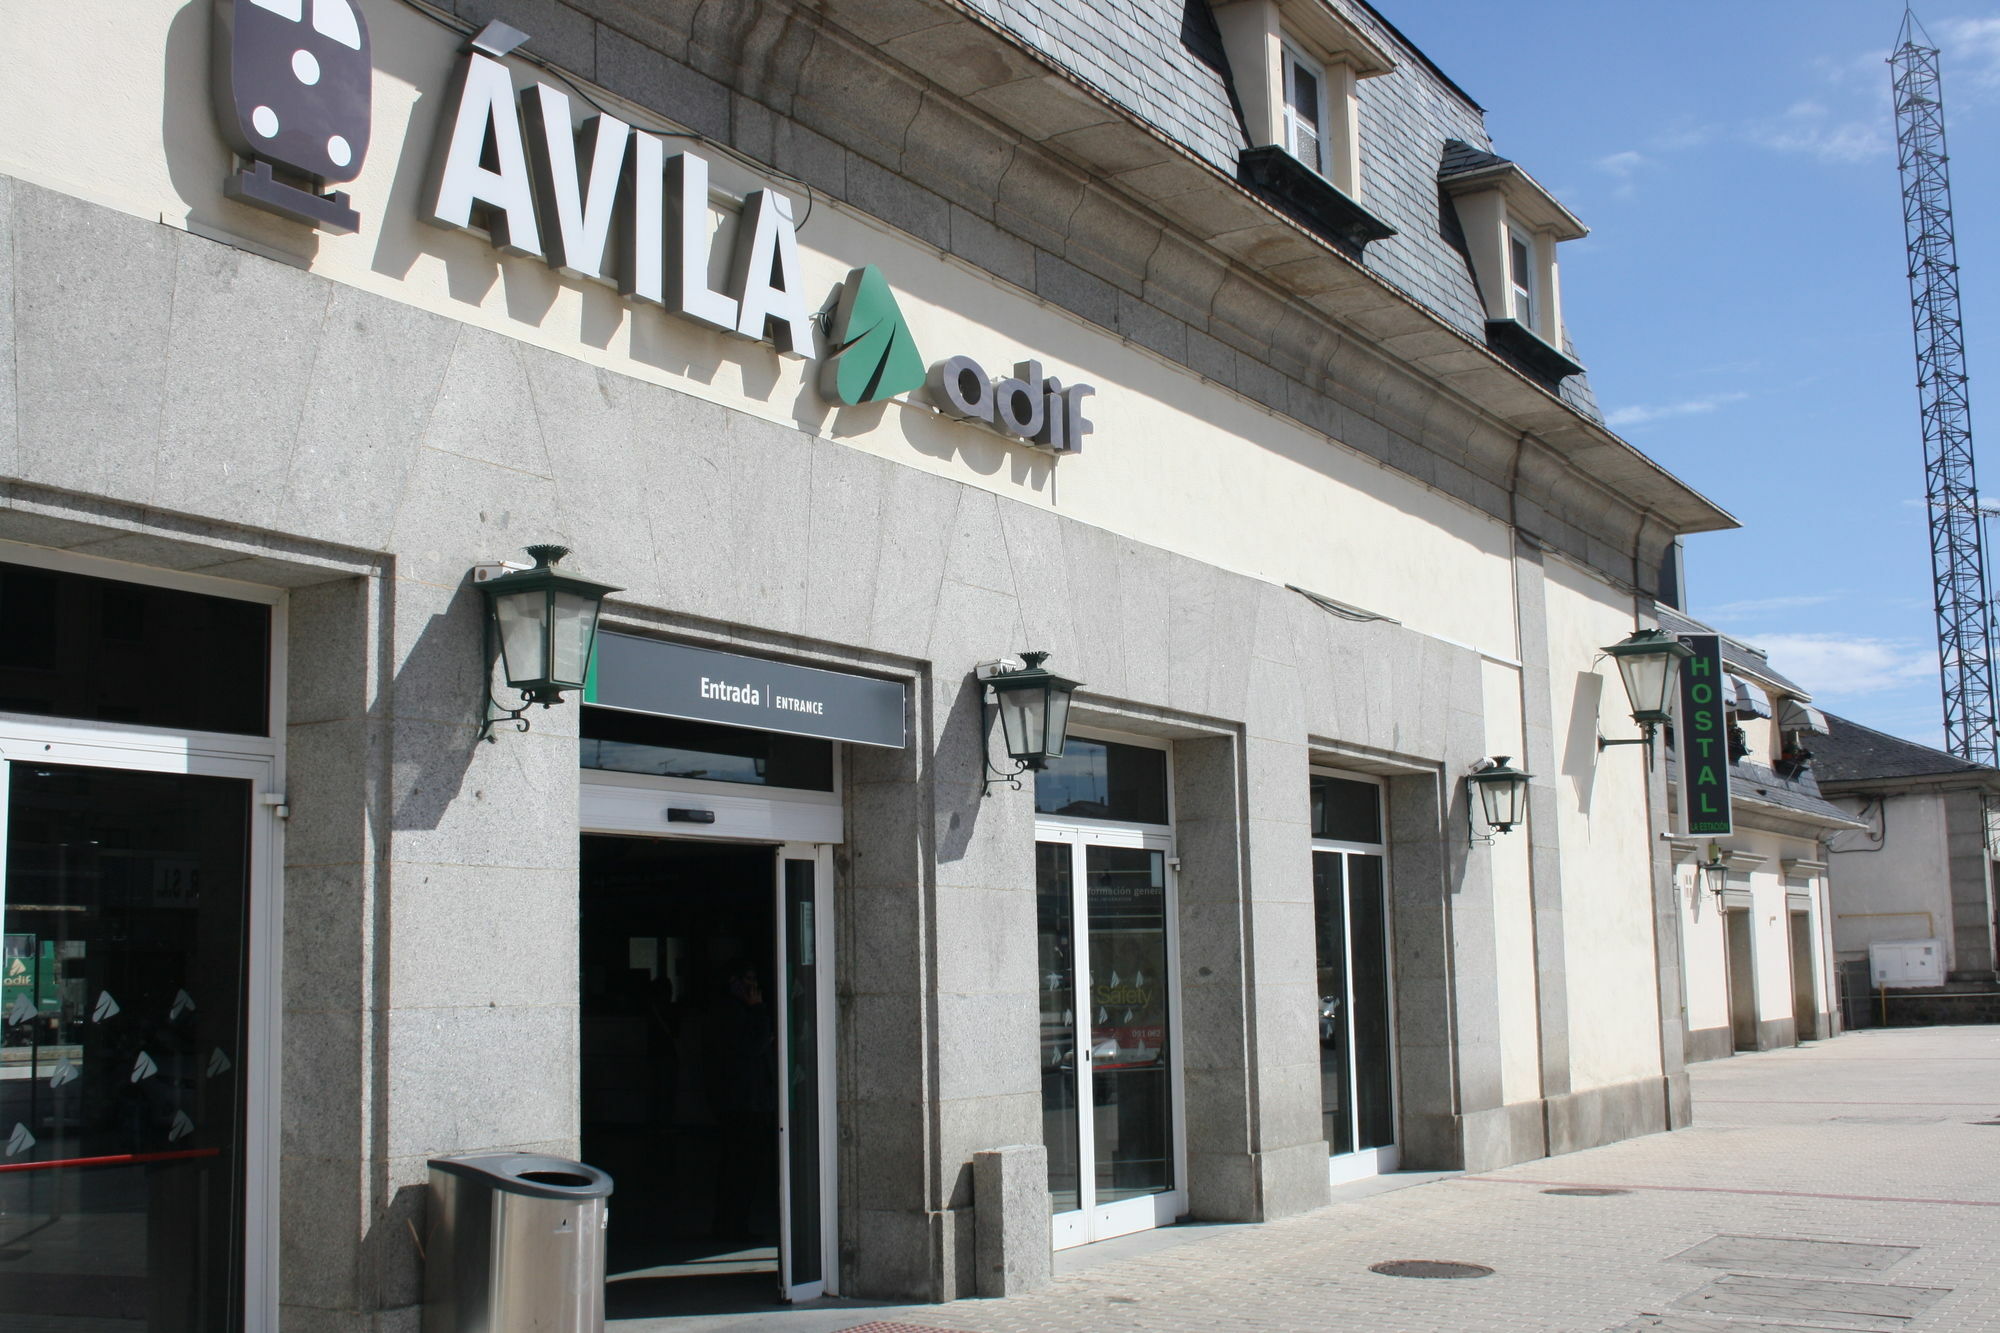 Hostal La Estacion Ávila 외부 사진